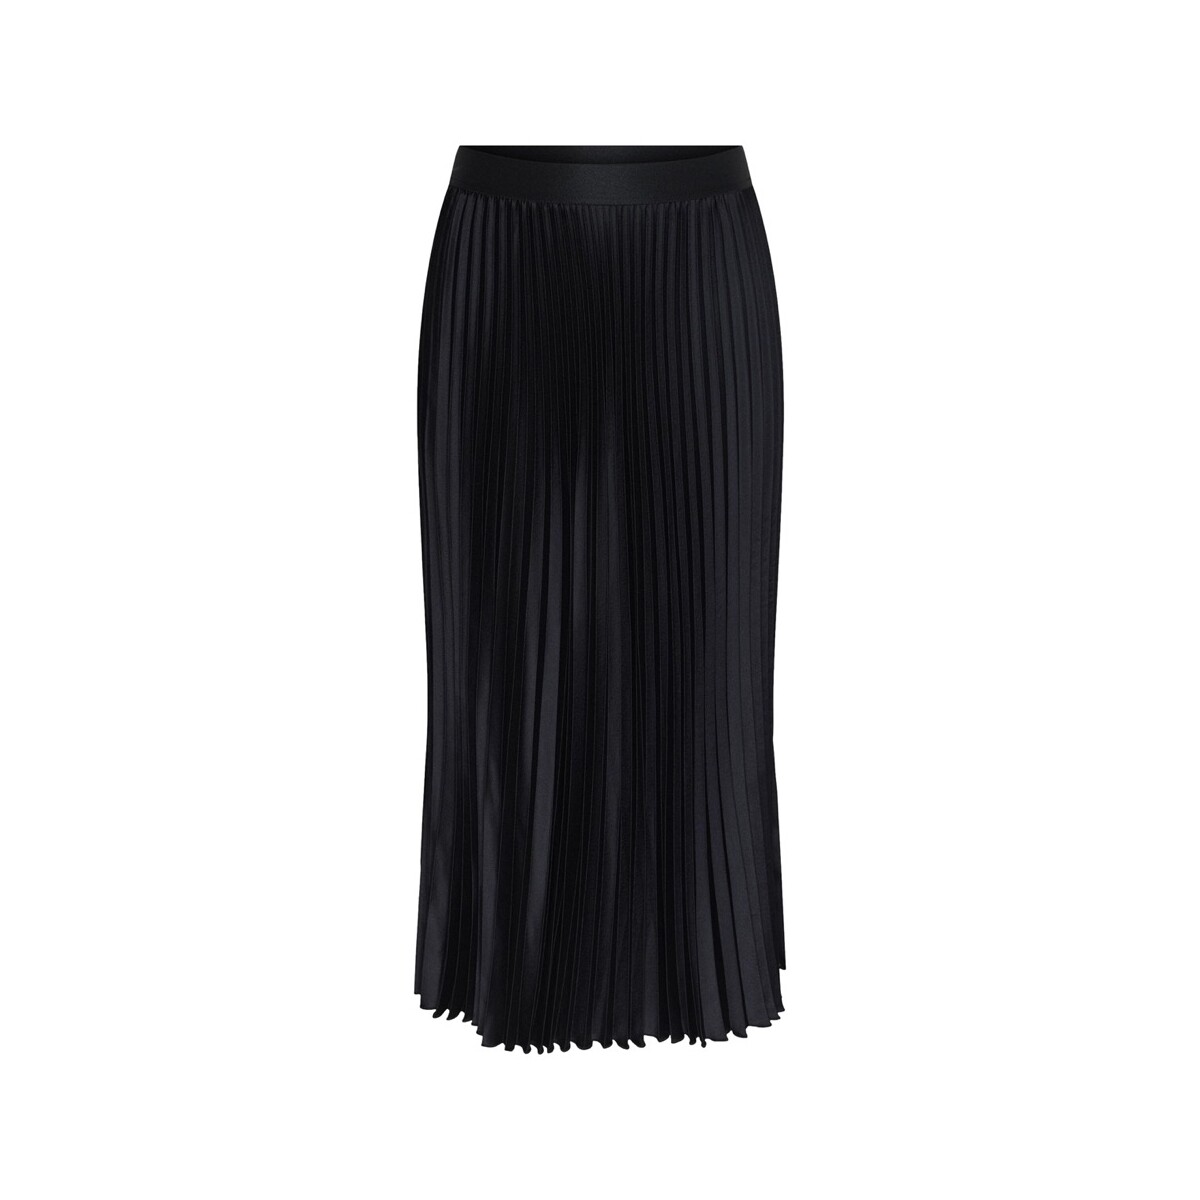 Vêtements Femme Looks similar to the Celine bucket bag YAS Celine Skirt - Black Noir